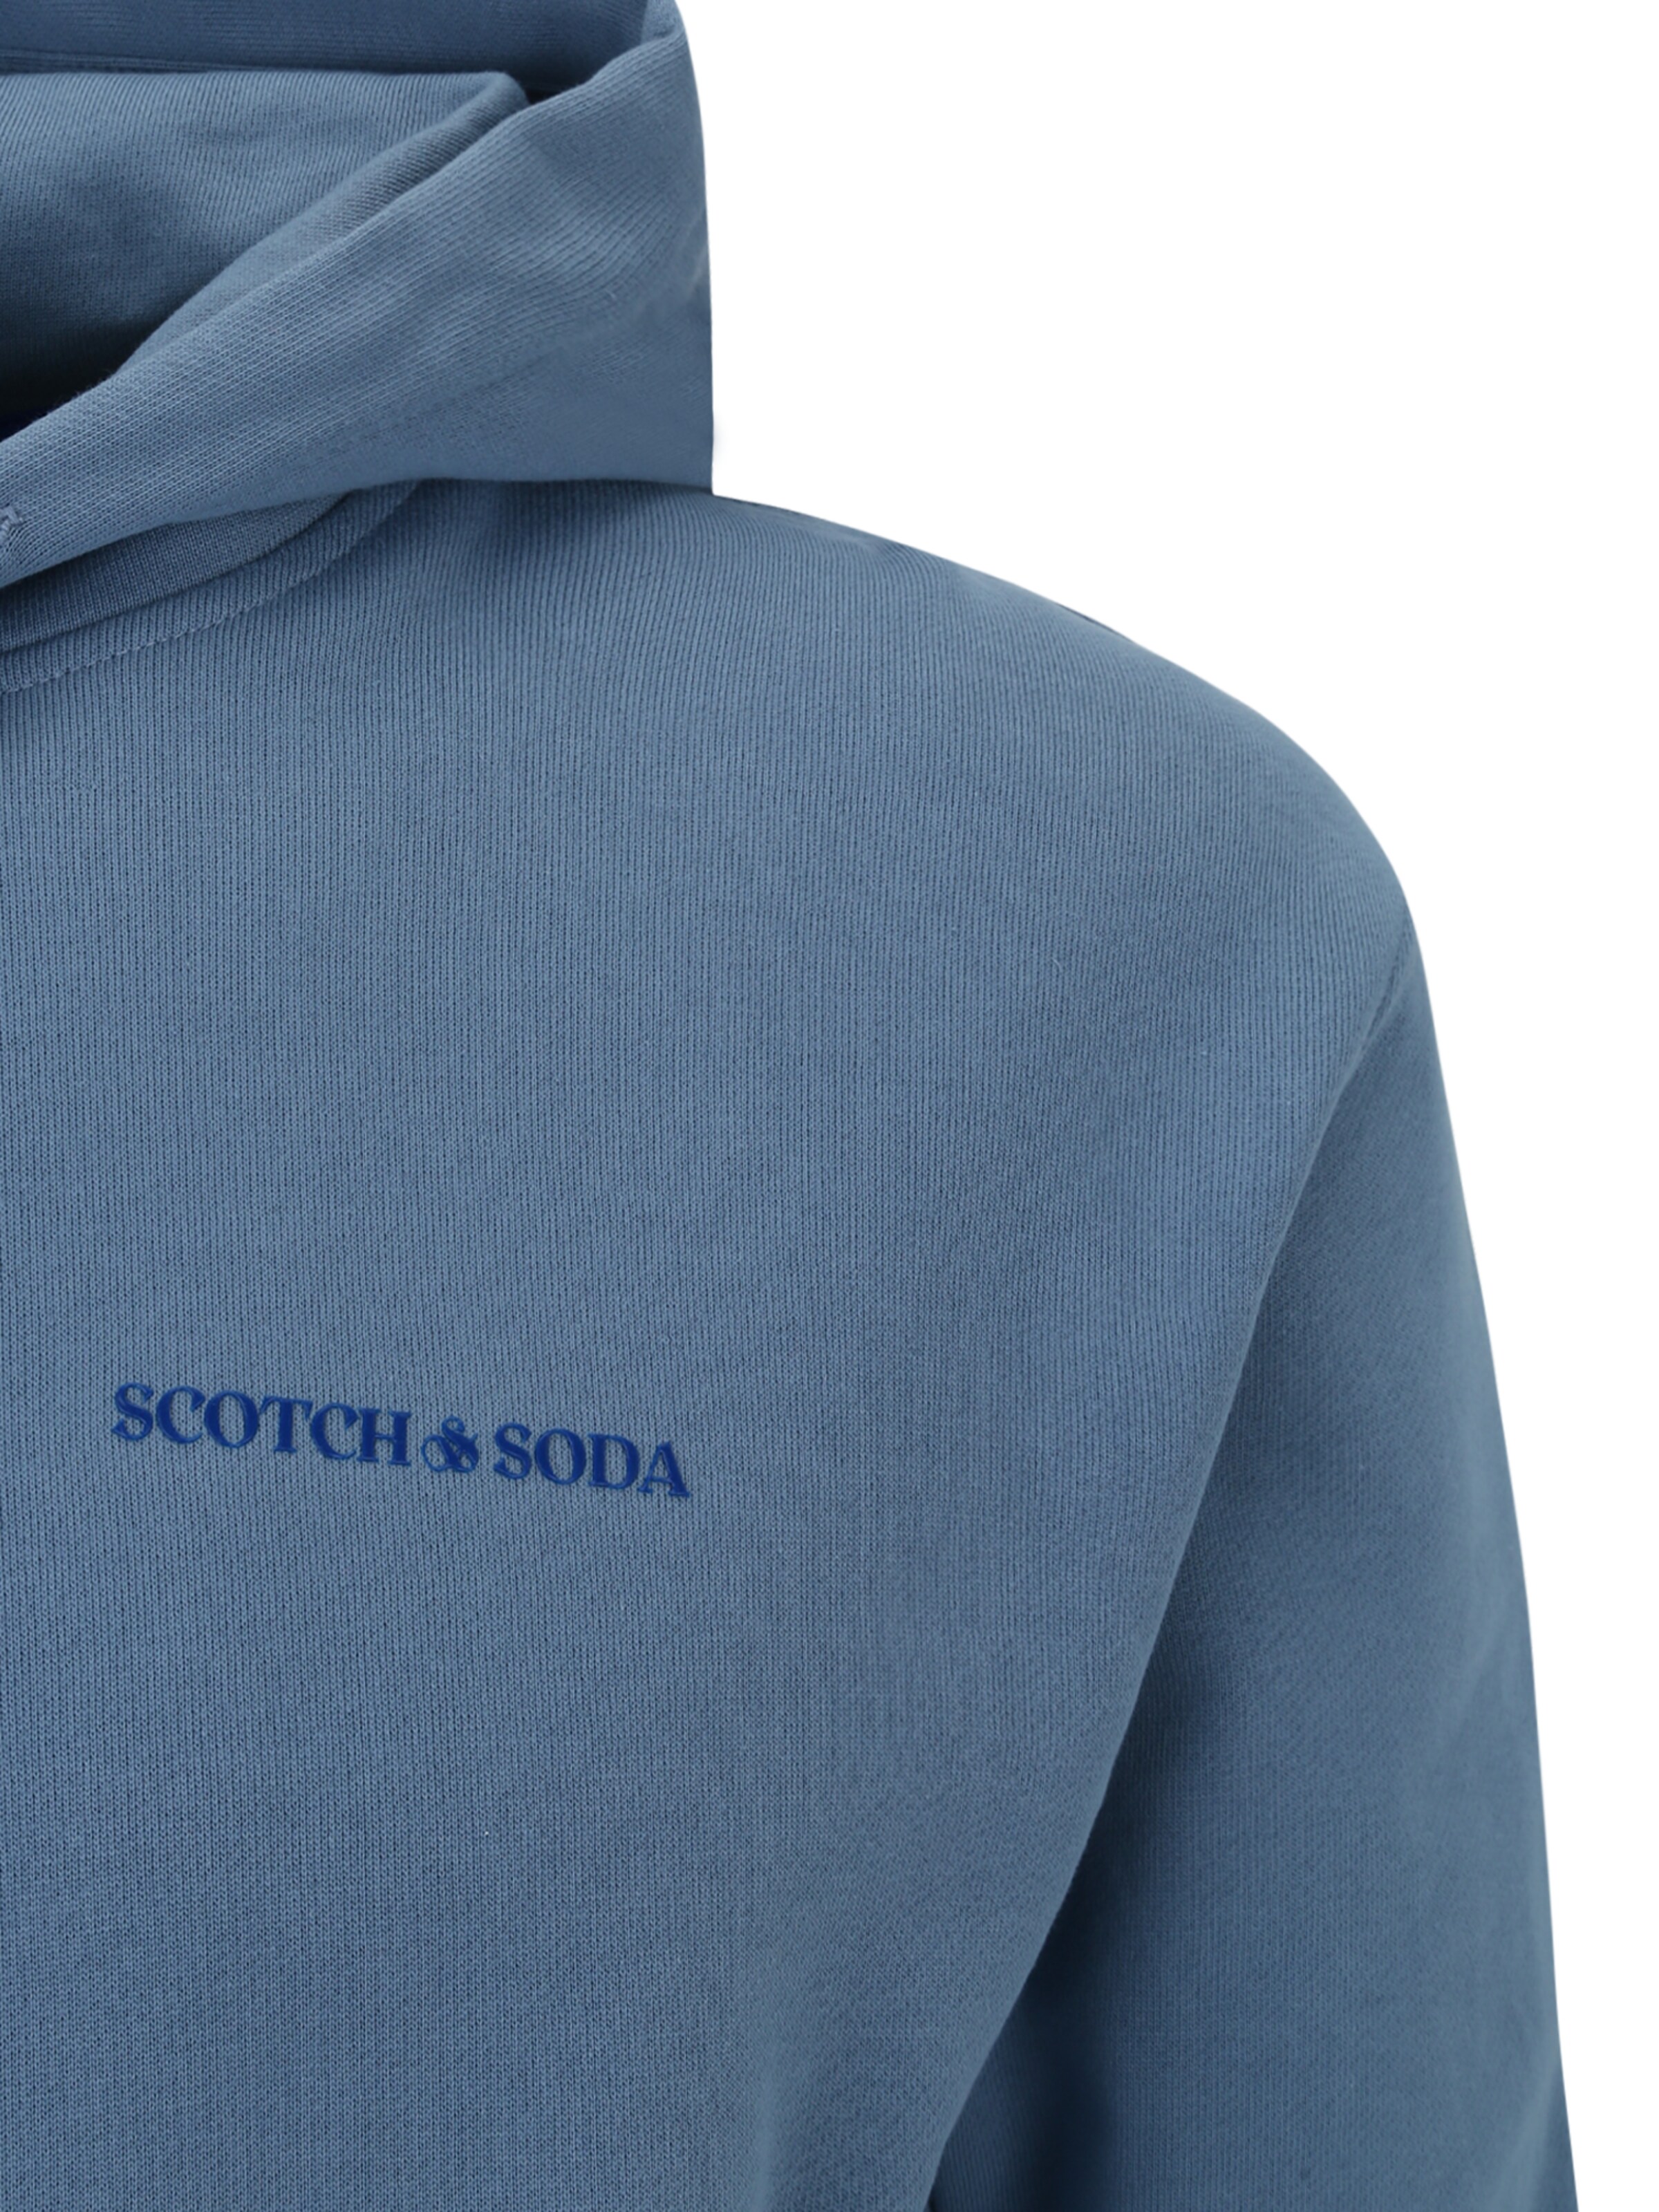 Männer Sweat SCOTCH & SODA Sweatshirt in Blau, Taubenblau - MW59482